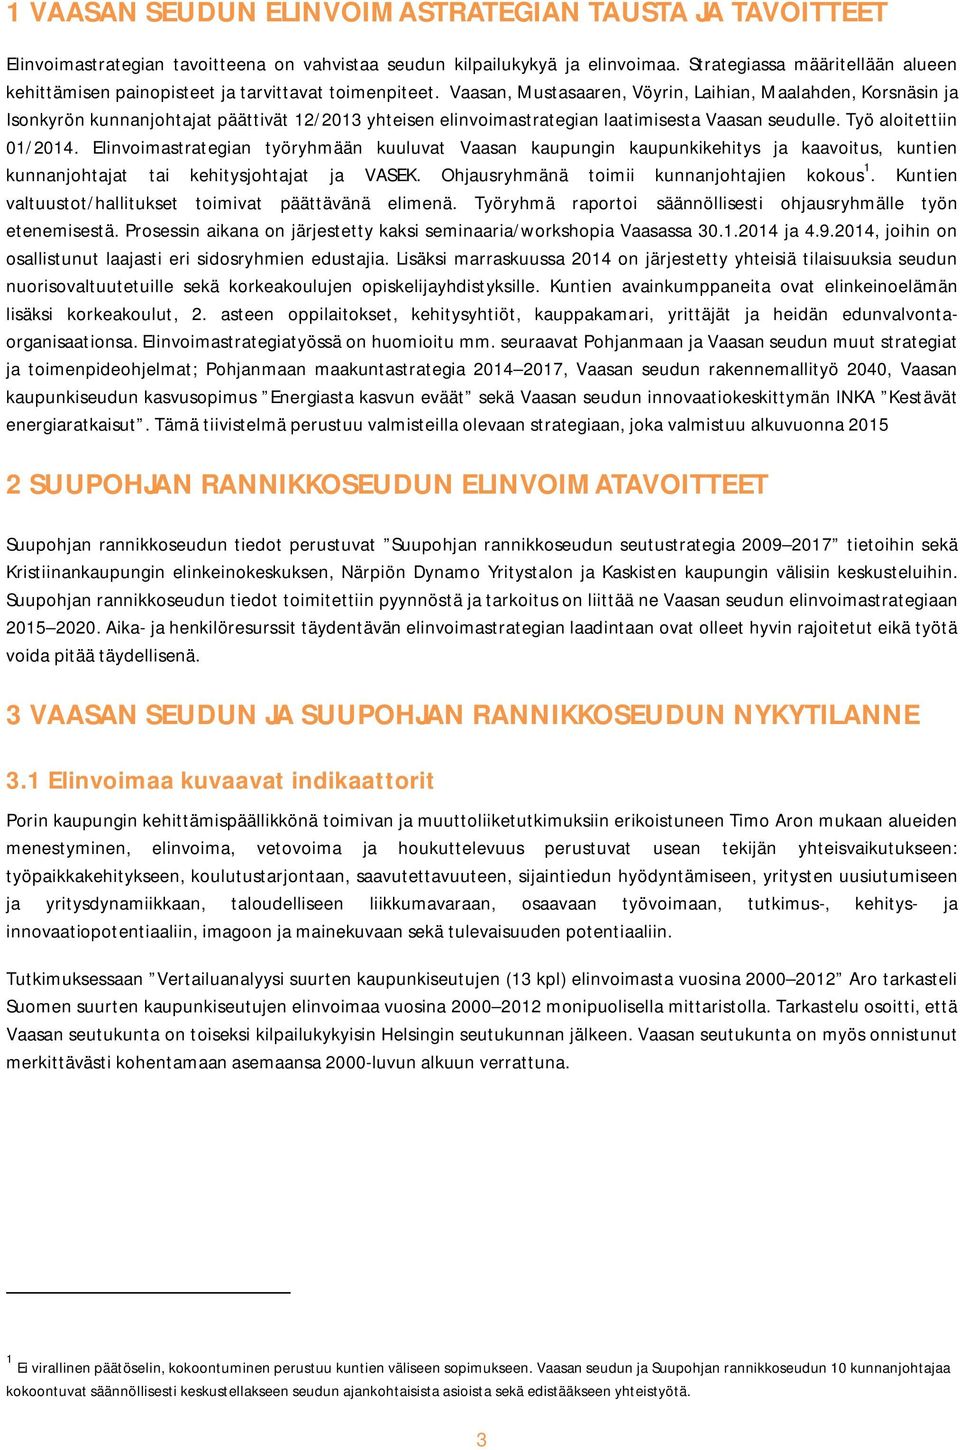 Vaasan, Mustasaaren, Vöyrin, Laihian, Maalahden, Korsnäsin ja Isonkyrön kunnanjohtajat päättivät 12/2013 yhteisen elinvoimastrategian laatimisesta Vaasan seudulle. Työ aloitettiin 01/2014.